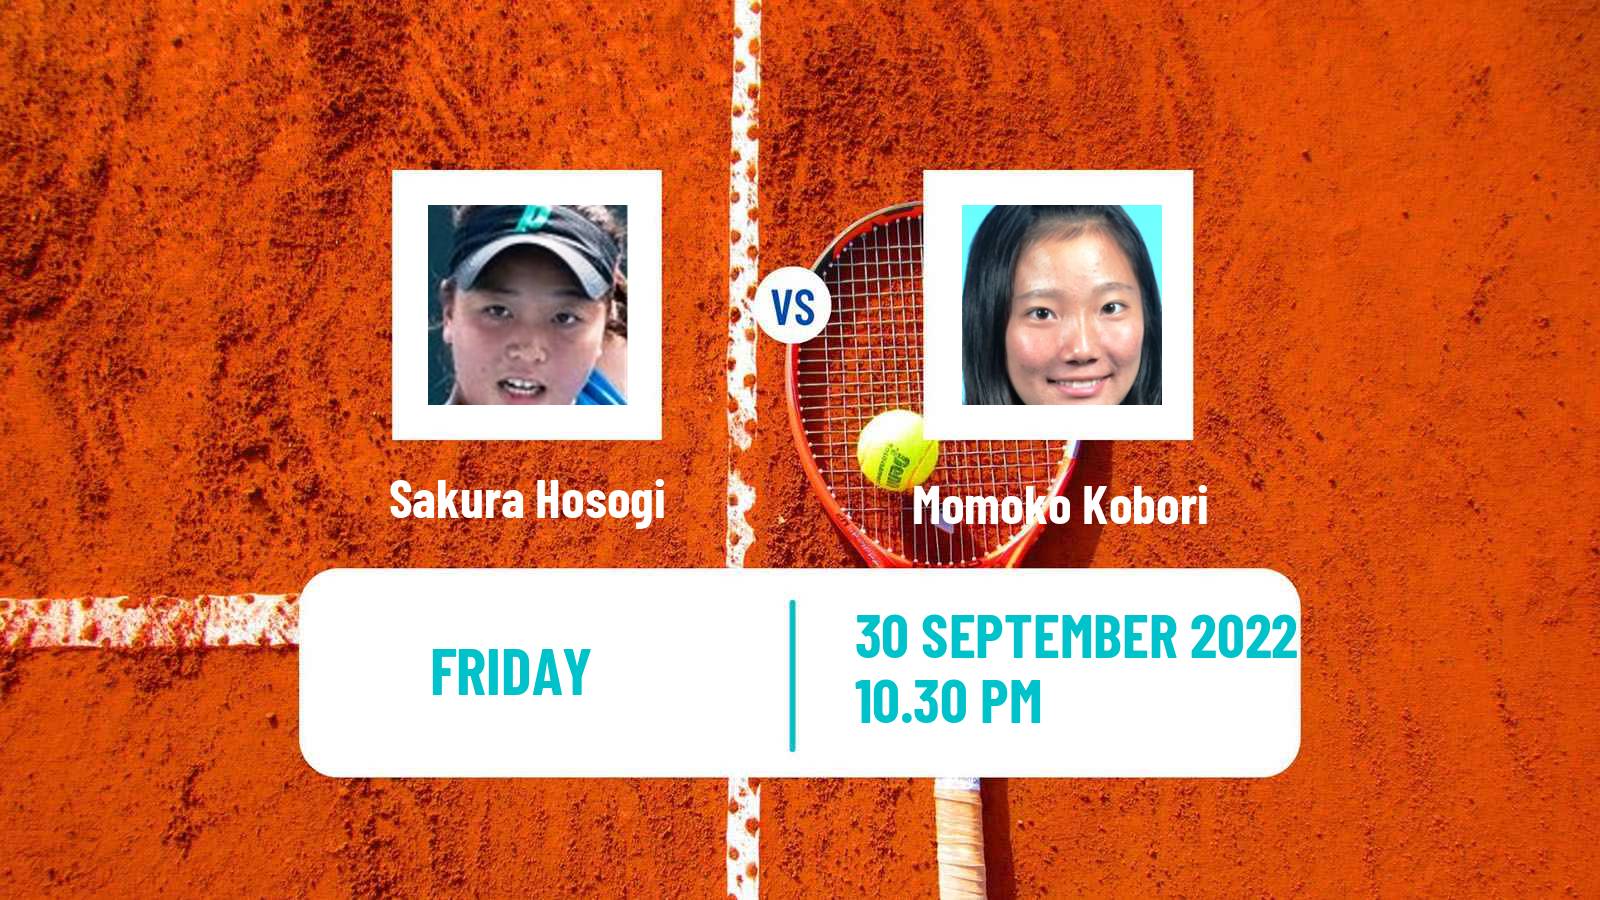 Tennis ITF Tournaments Sakura Hosogi - Momoko Kobori